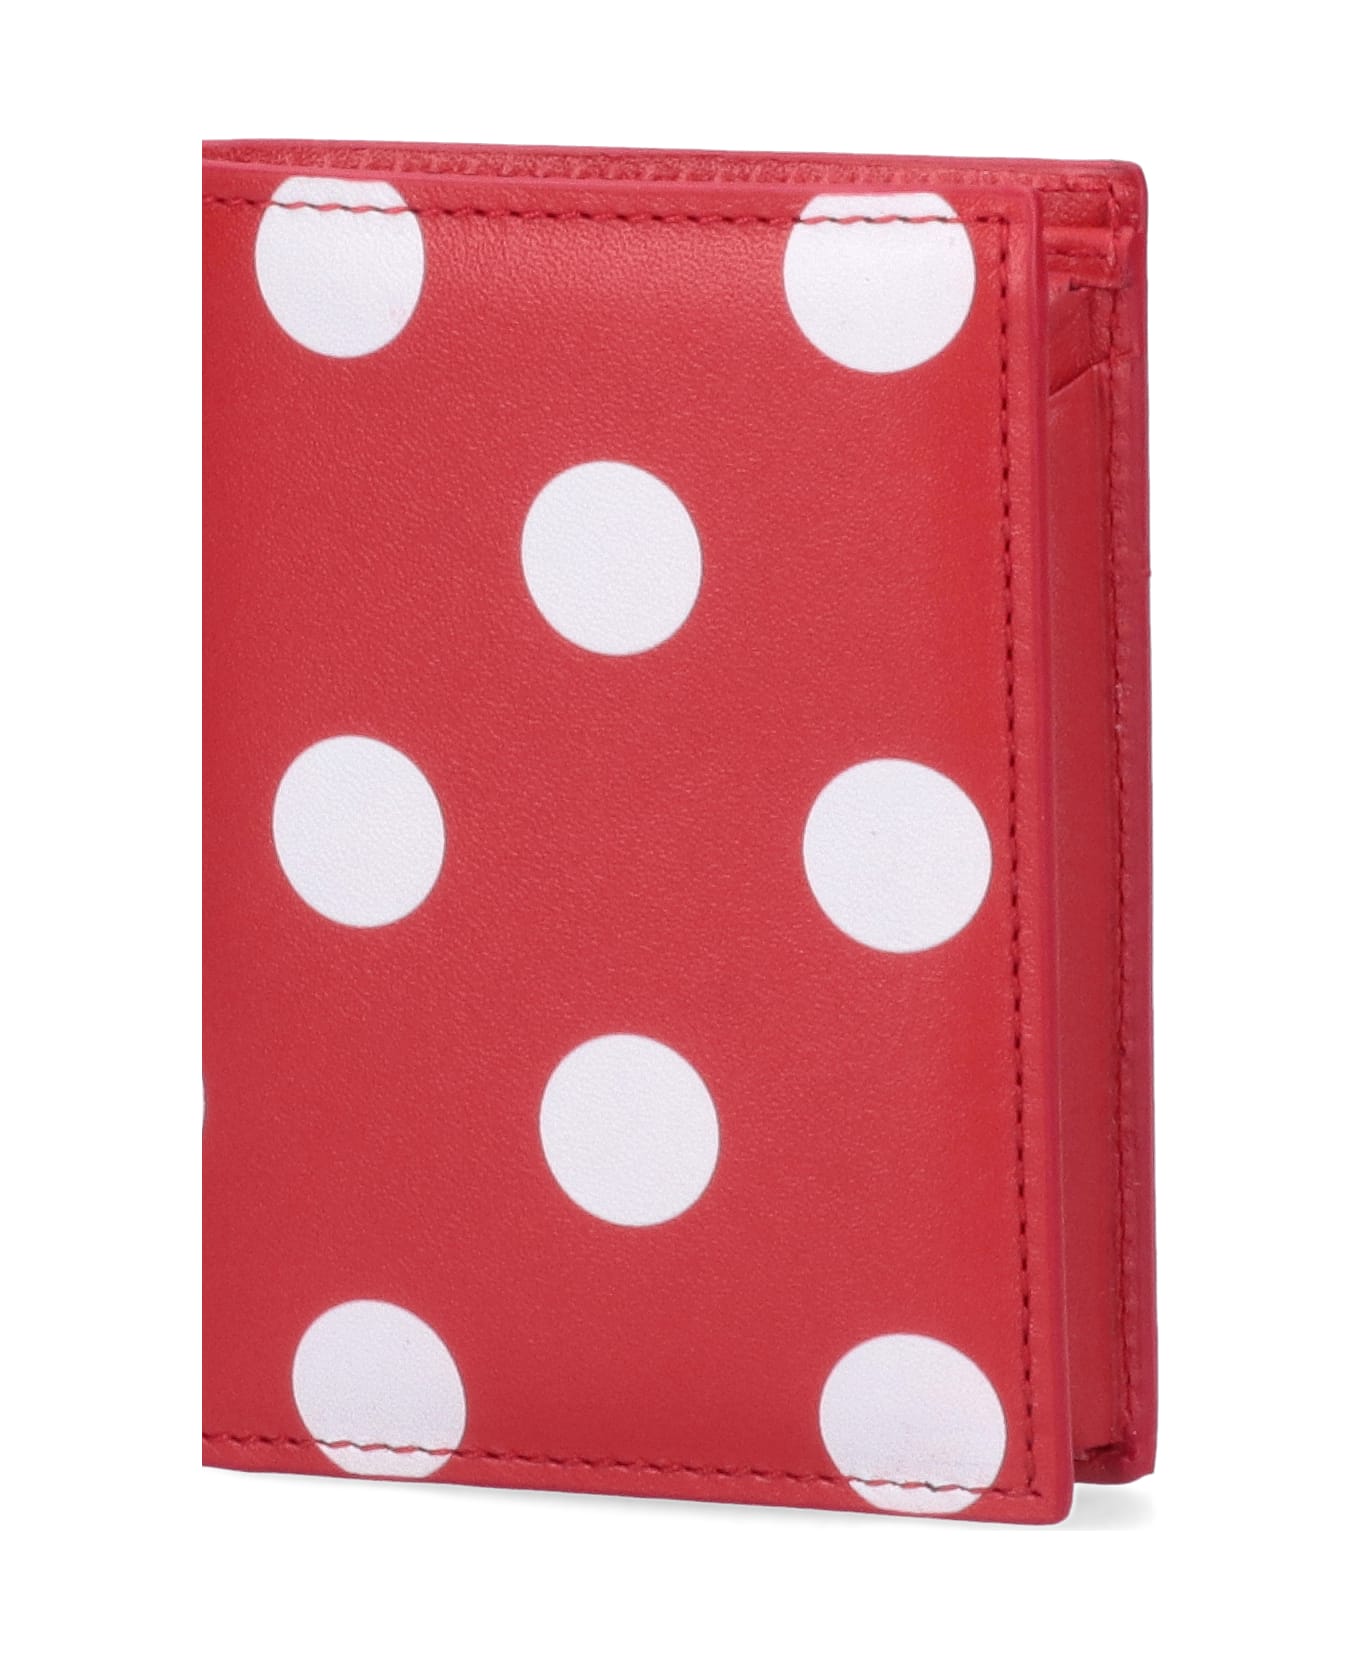 Comme des Garçons Wallet Bi-fold Wallet 'polka Dots' - Red